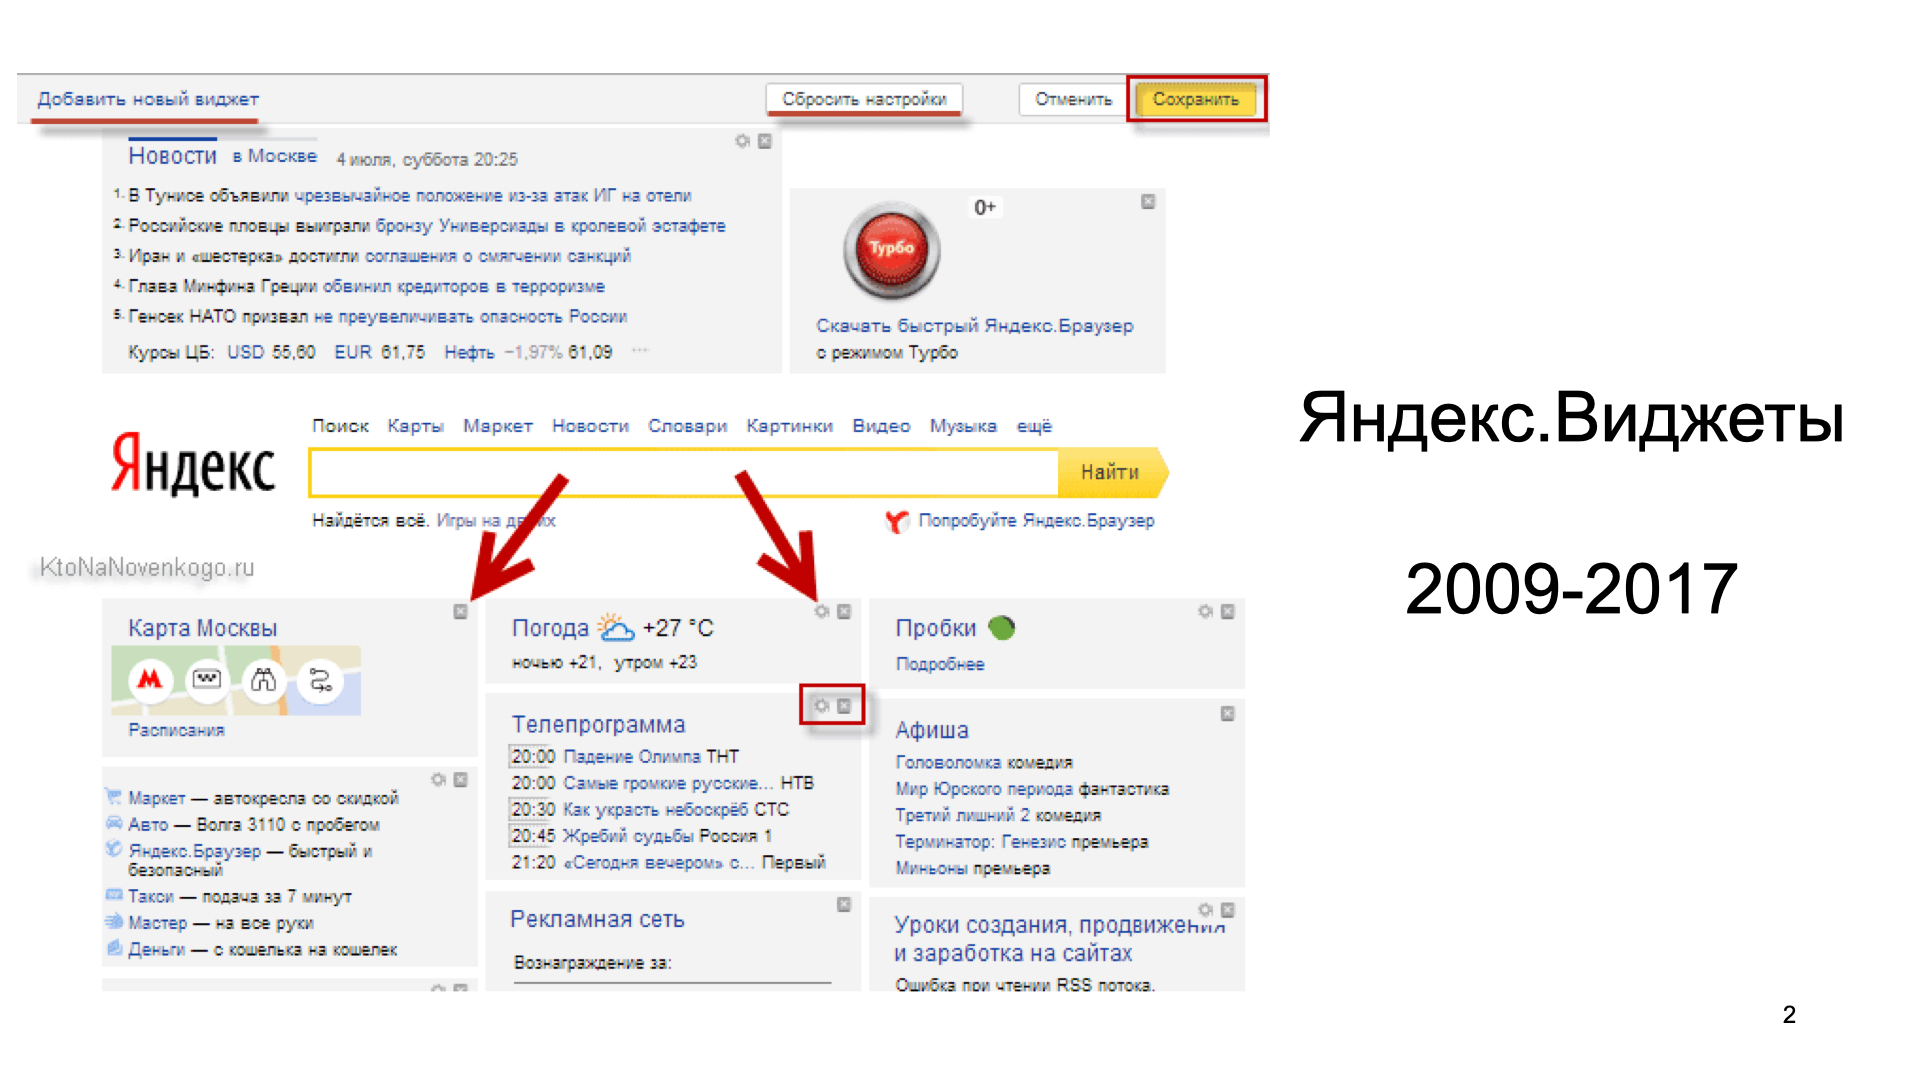 Установить главной. Настройки Яндекса Главная страница. Как настроить главную страницу Яндекса. Добавить Виджет на главную страницу Яндекса.